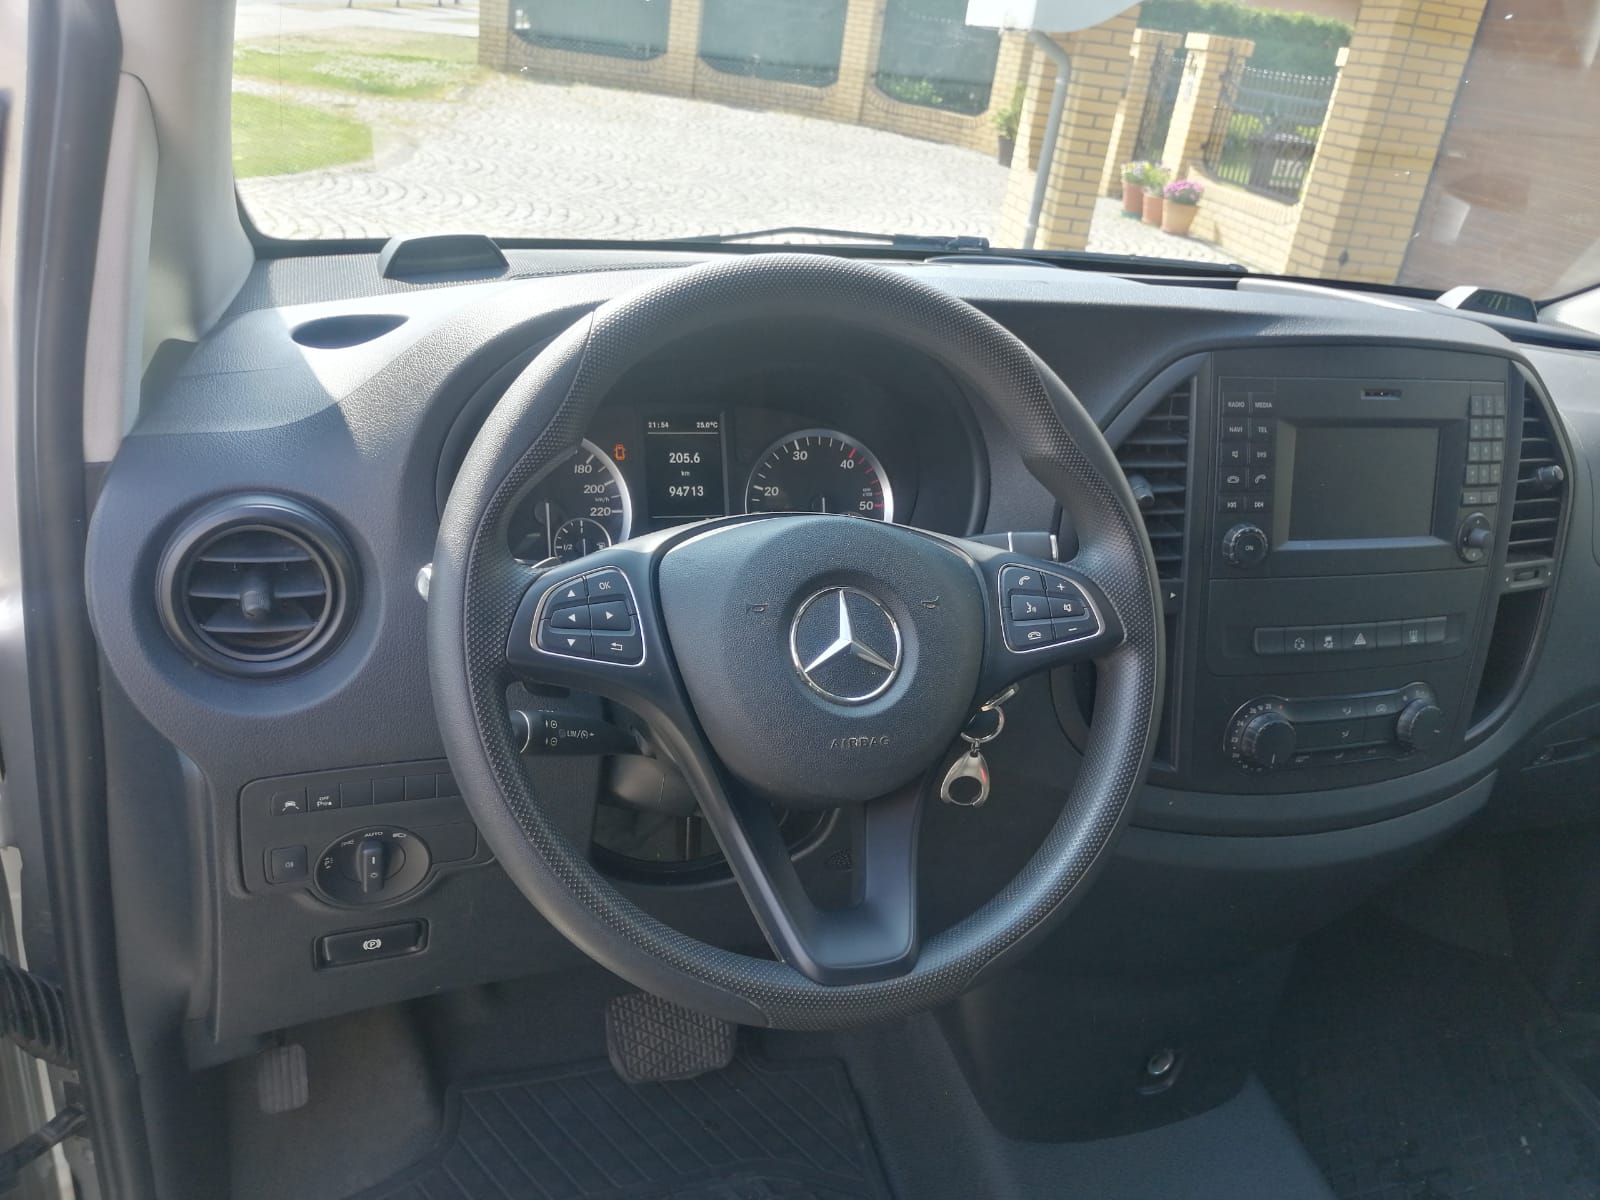 Mercedes Vito 116 cdi 2017 Zabudowa Typ B